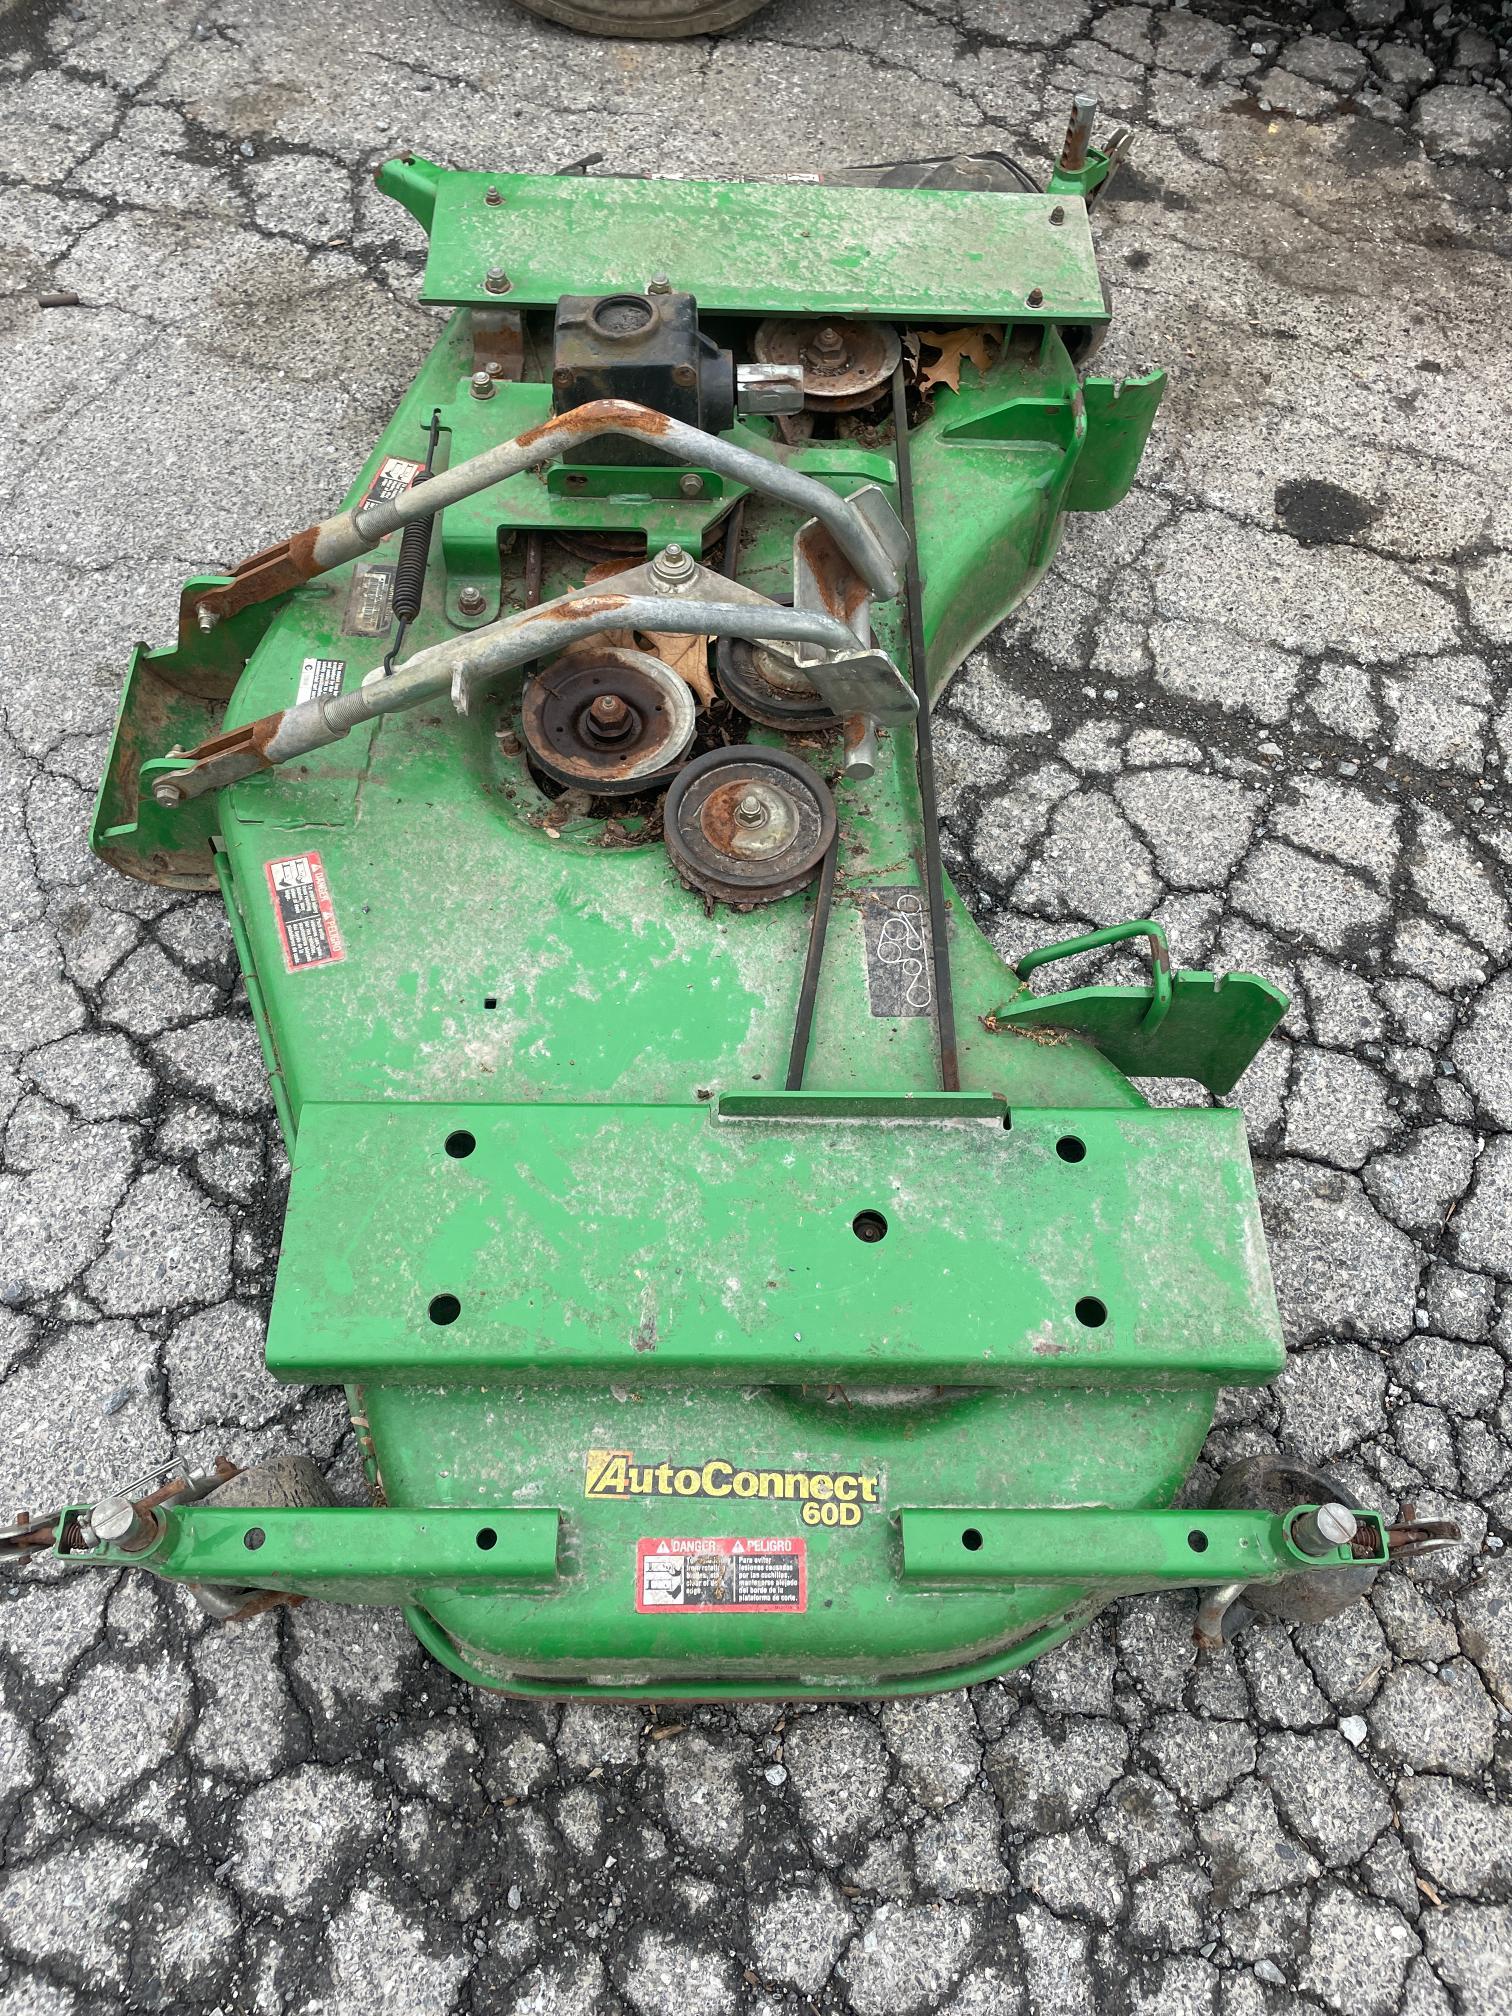 John Deere 3720 4X4 Hydrostatic Tractor W/Loader